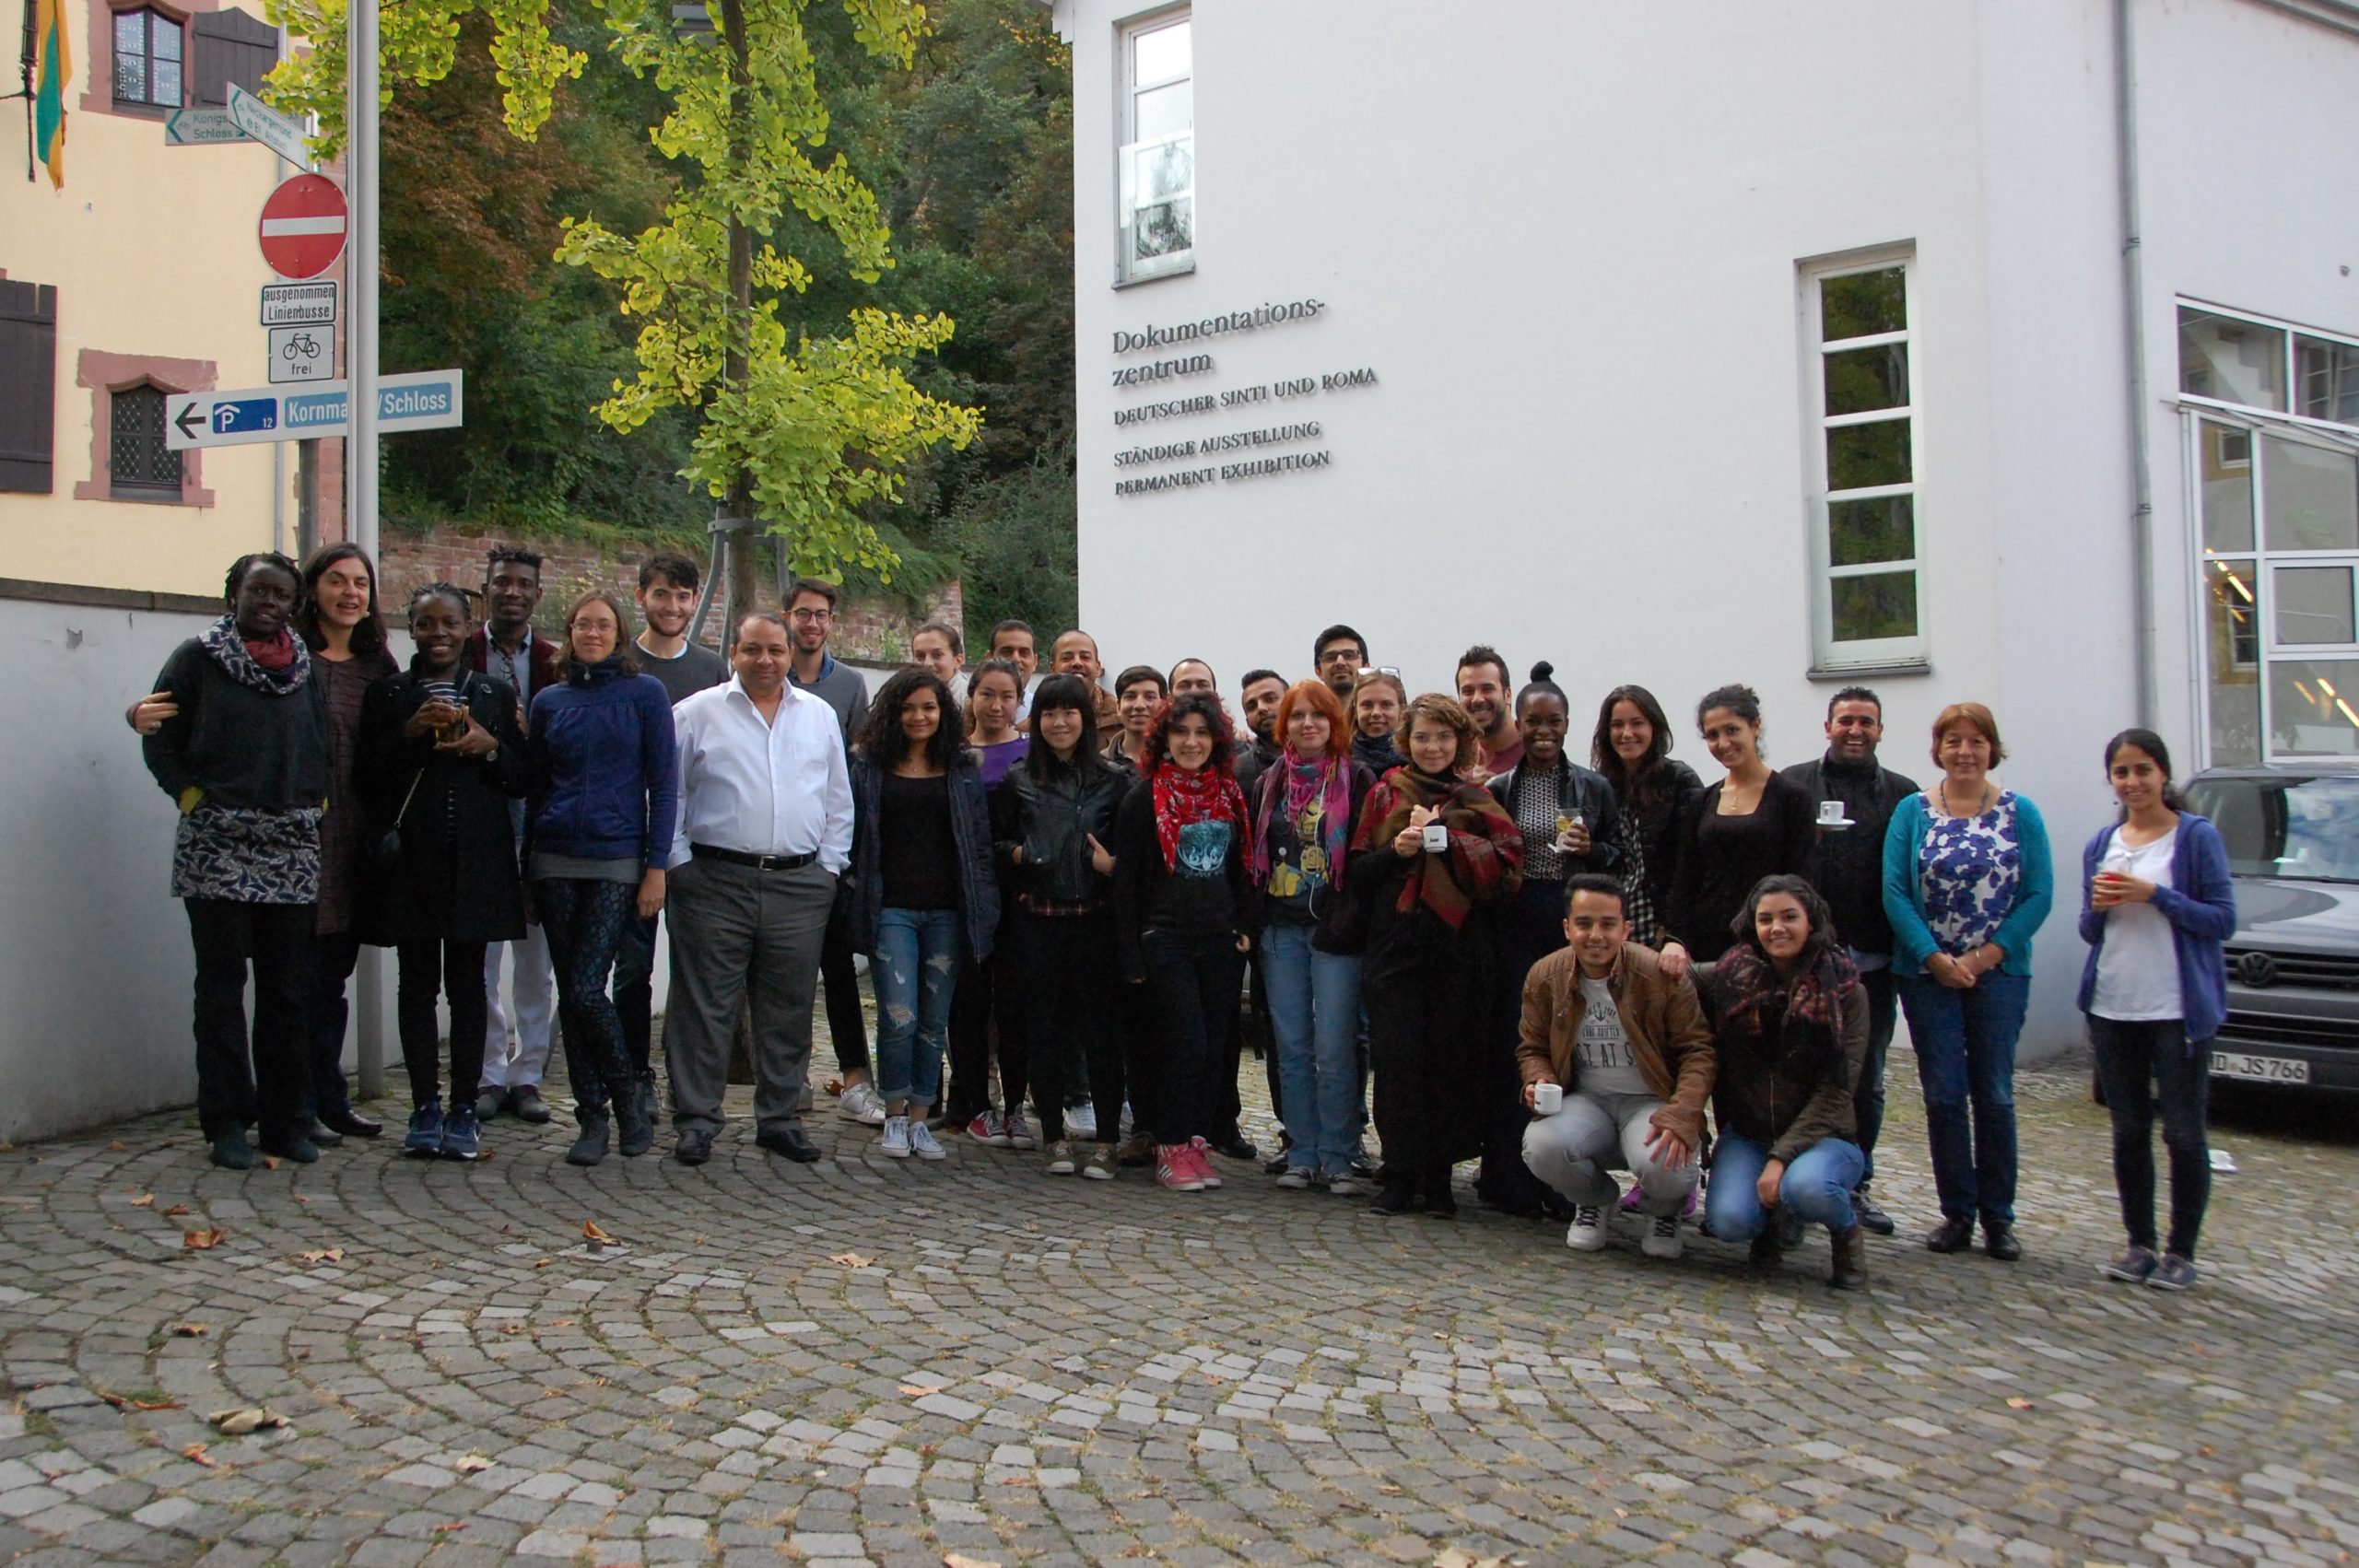 Gruppenbild von Stipendiatinnen und Stipendiaten der Friedrich-Ebert-Stiftung im Innenhof des Dokumentationszentrums.